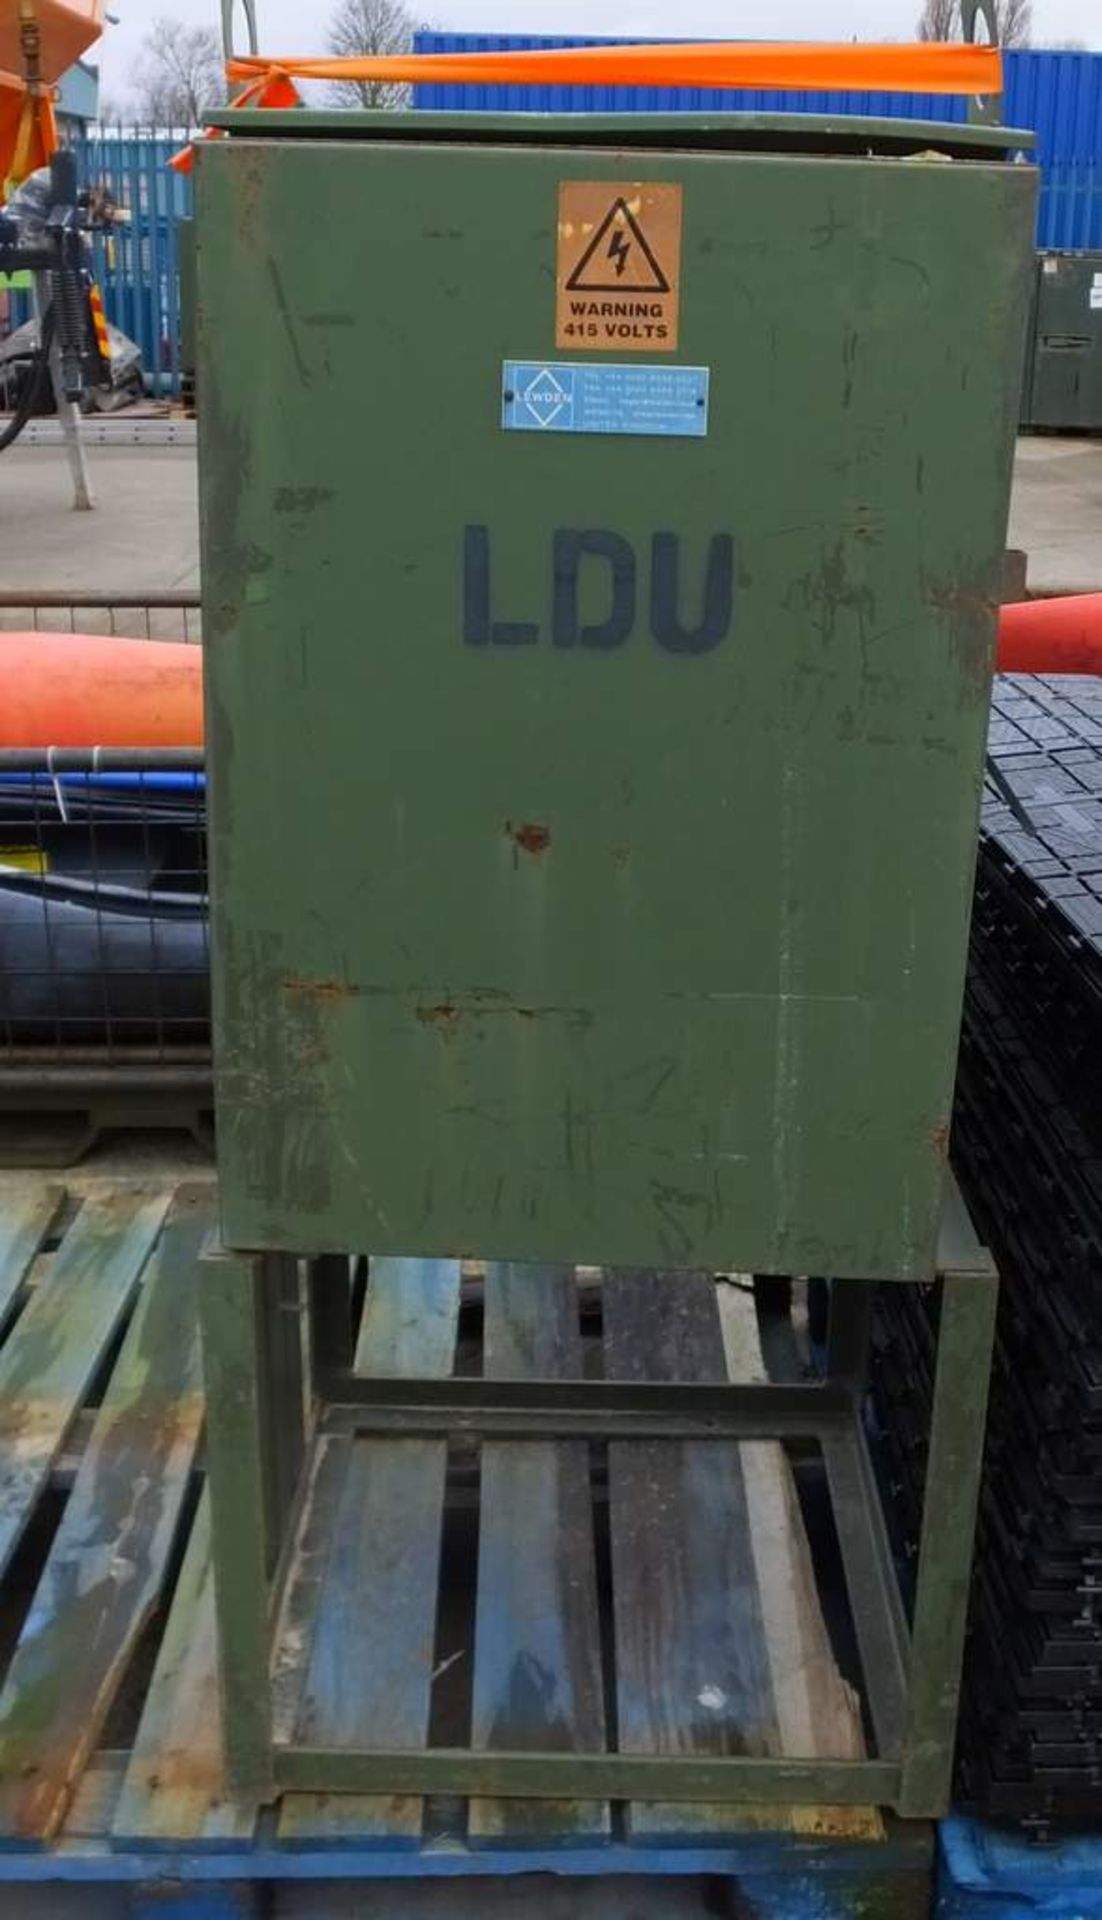 Lewden LDU 400v distribution box